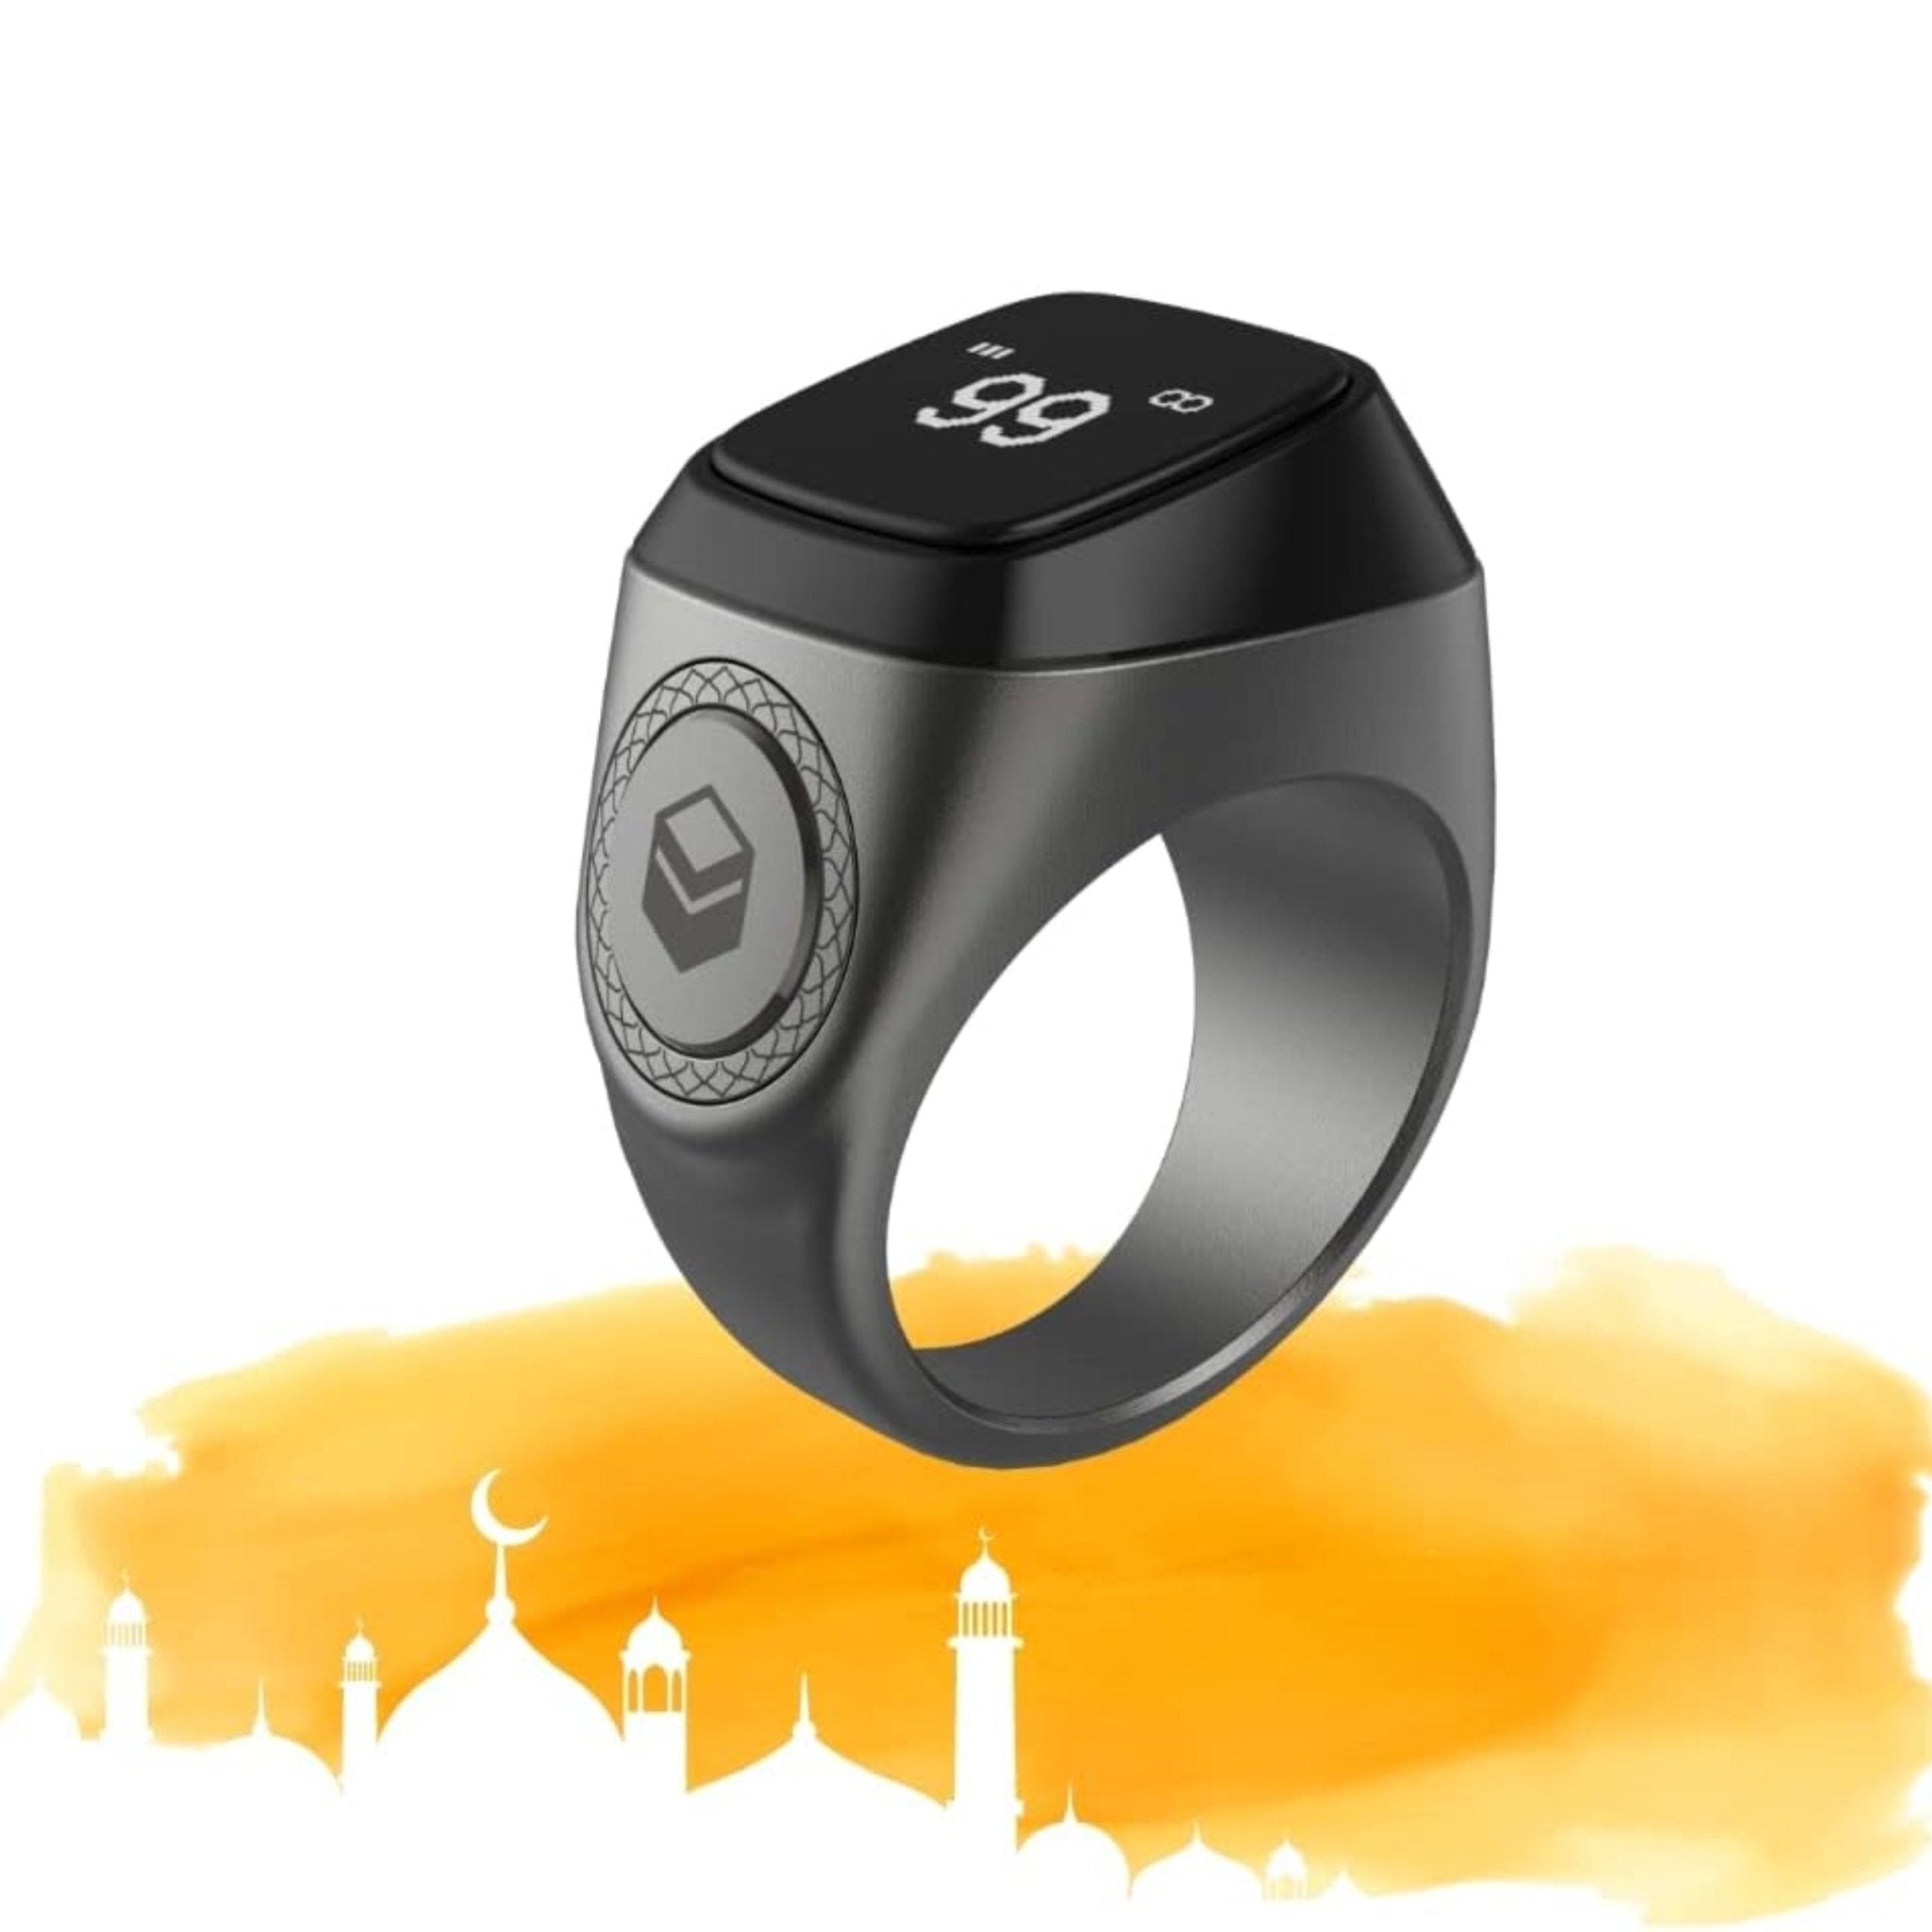 iQibla Smart Tasbih Zikr Ring 22mm - Space Gray